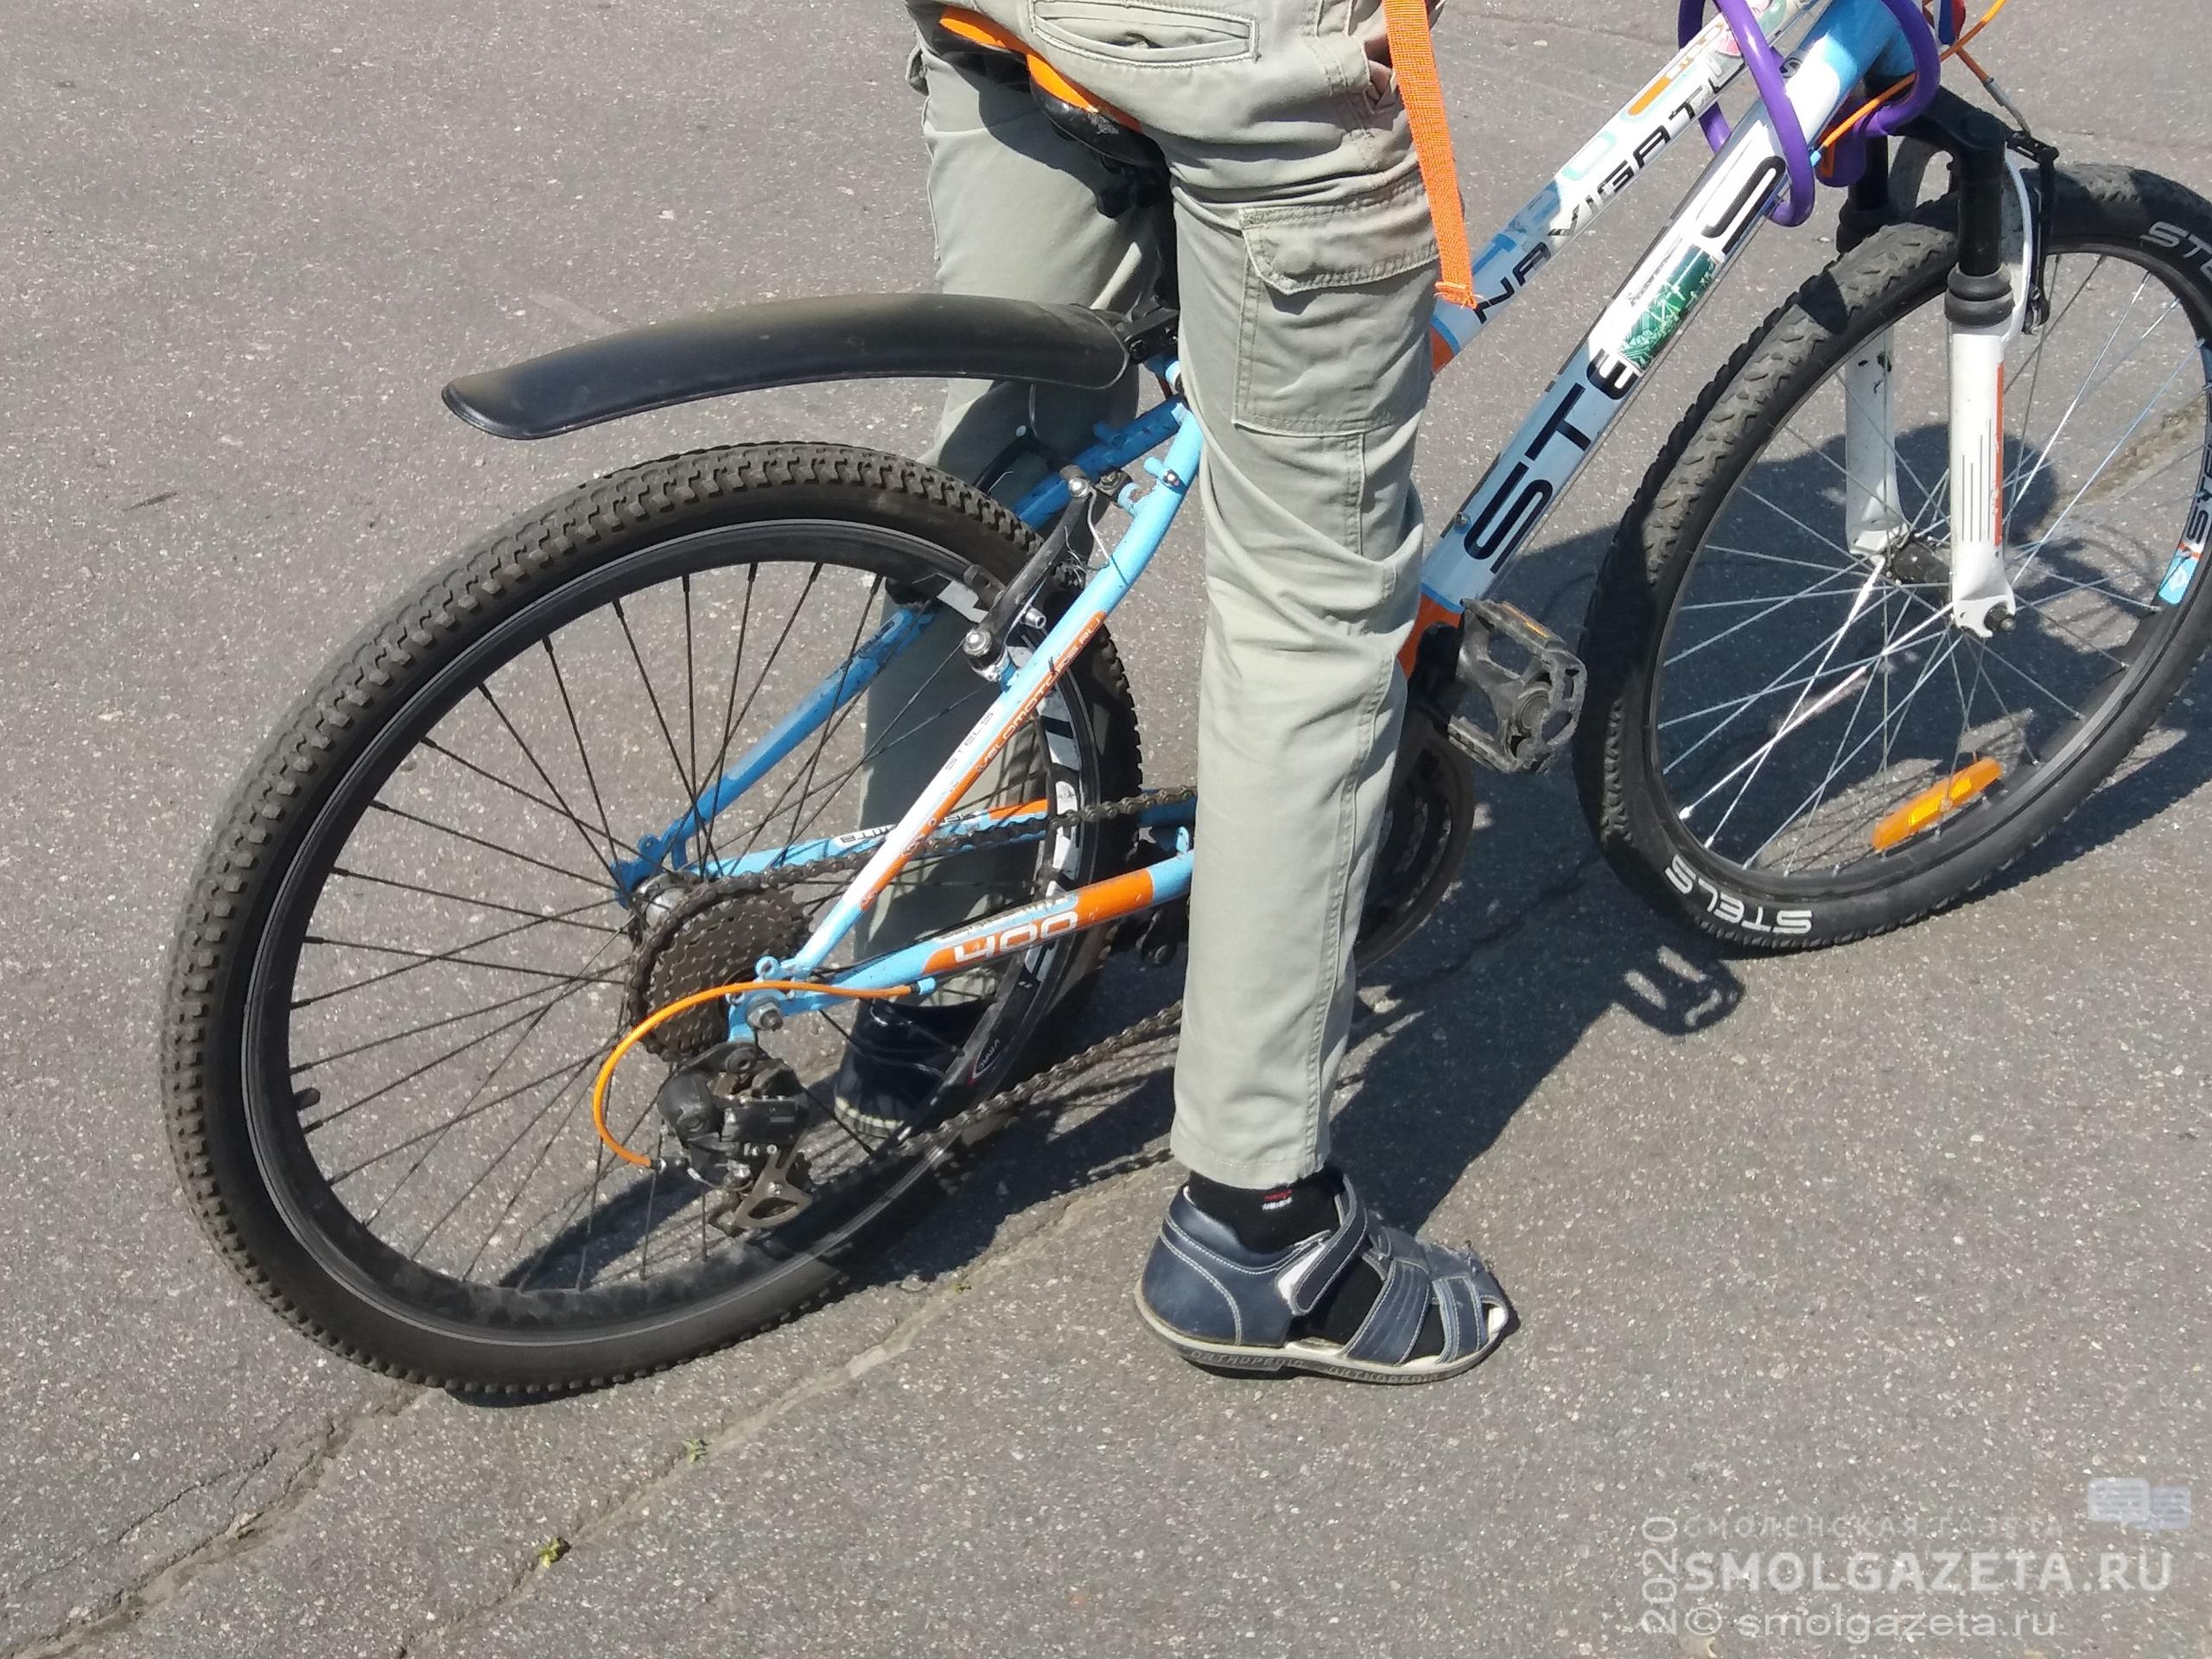 Смолянин украл велосипед у соседки